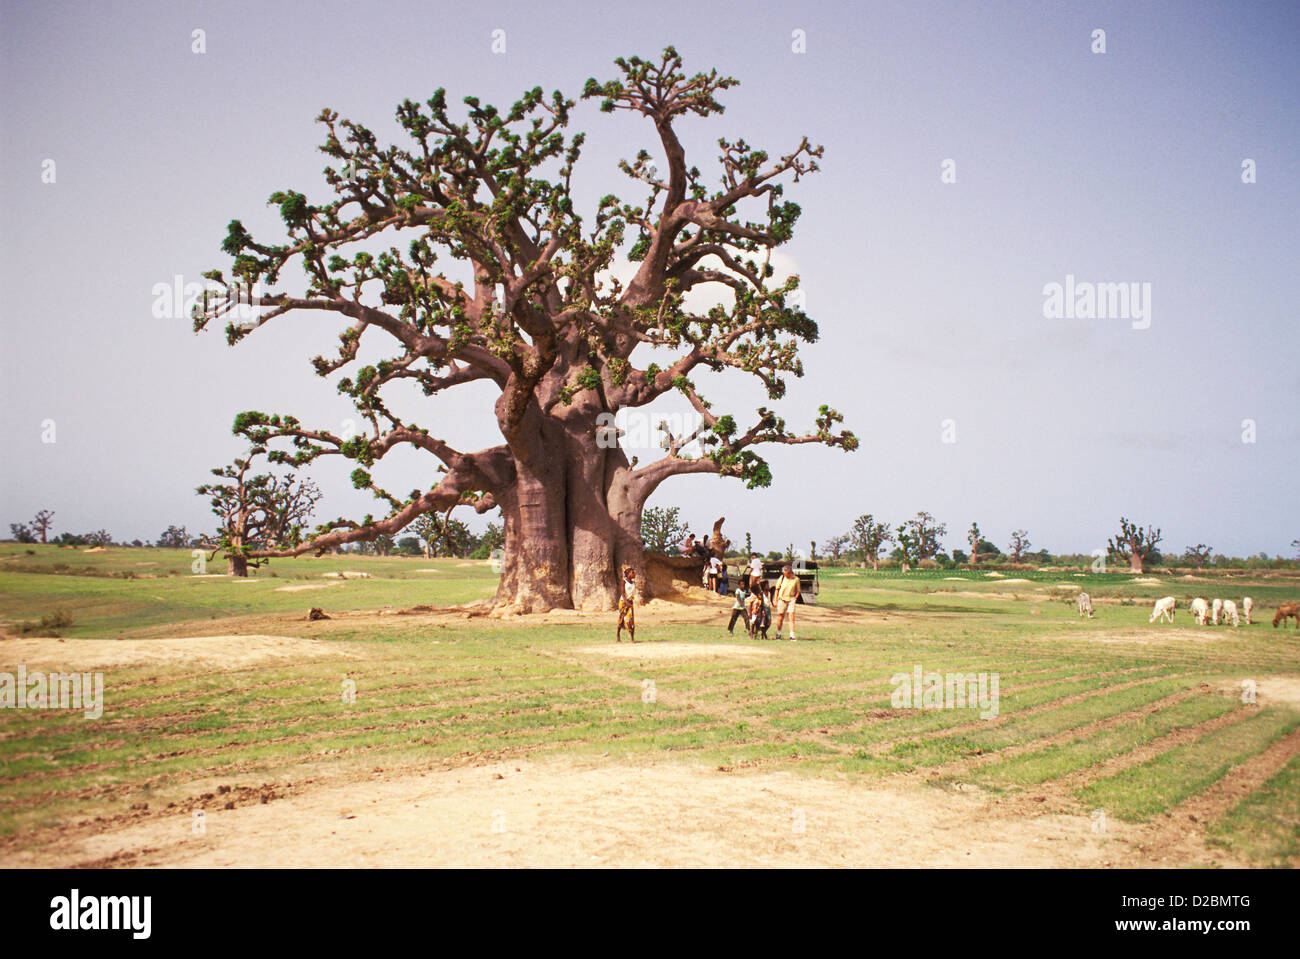 Le Sénégal, région de M'Bour. Baobab dans la zone, les gens en dessous Banque D'Images